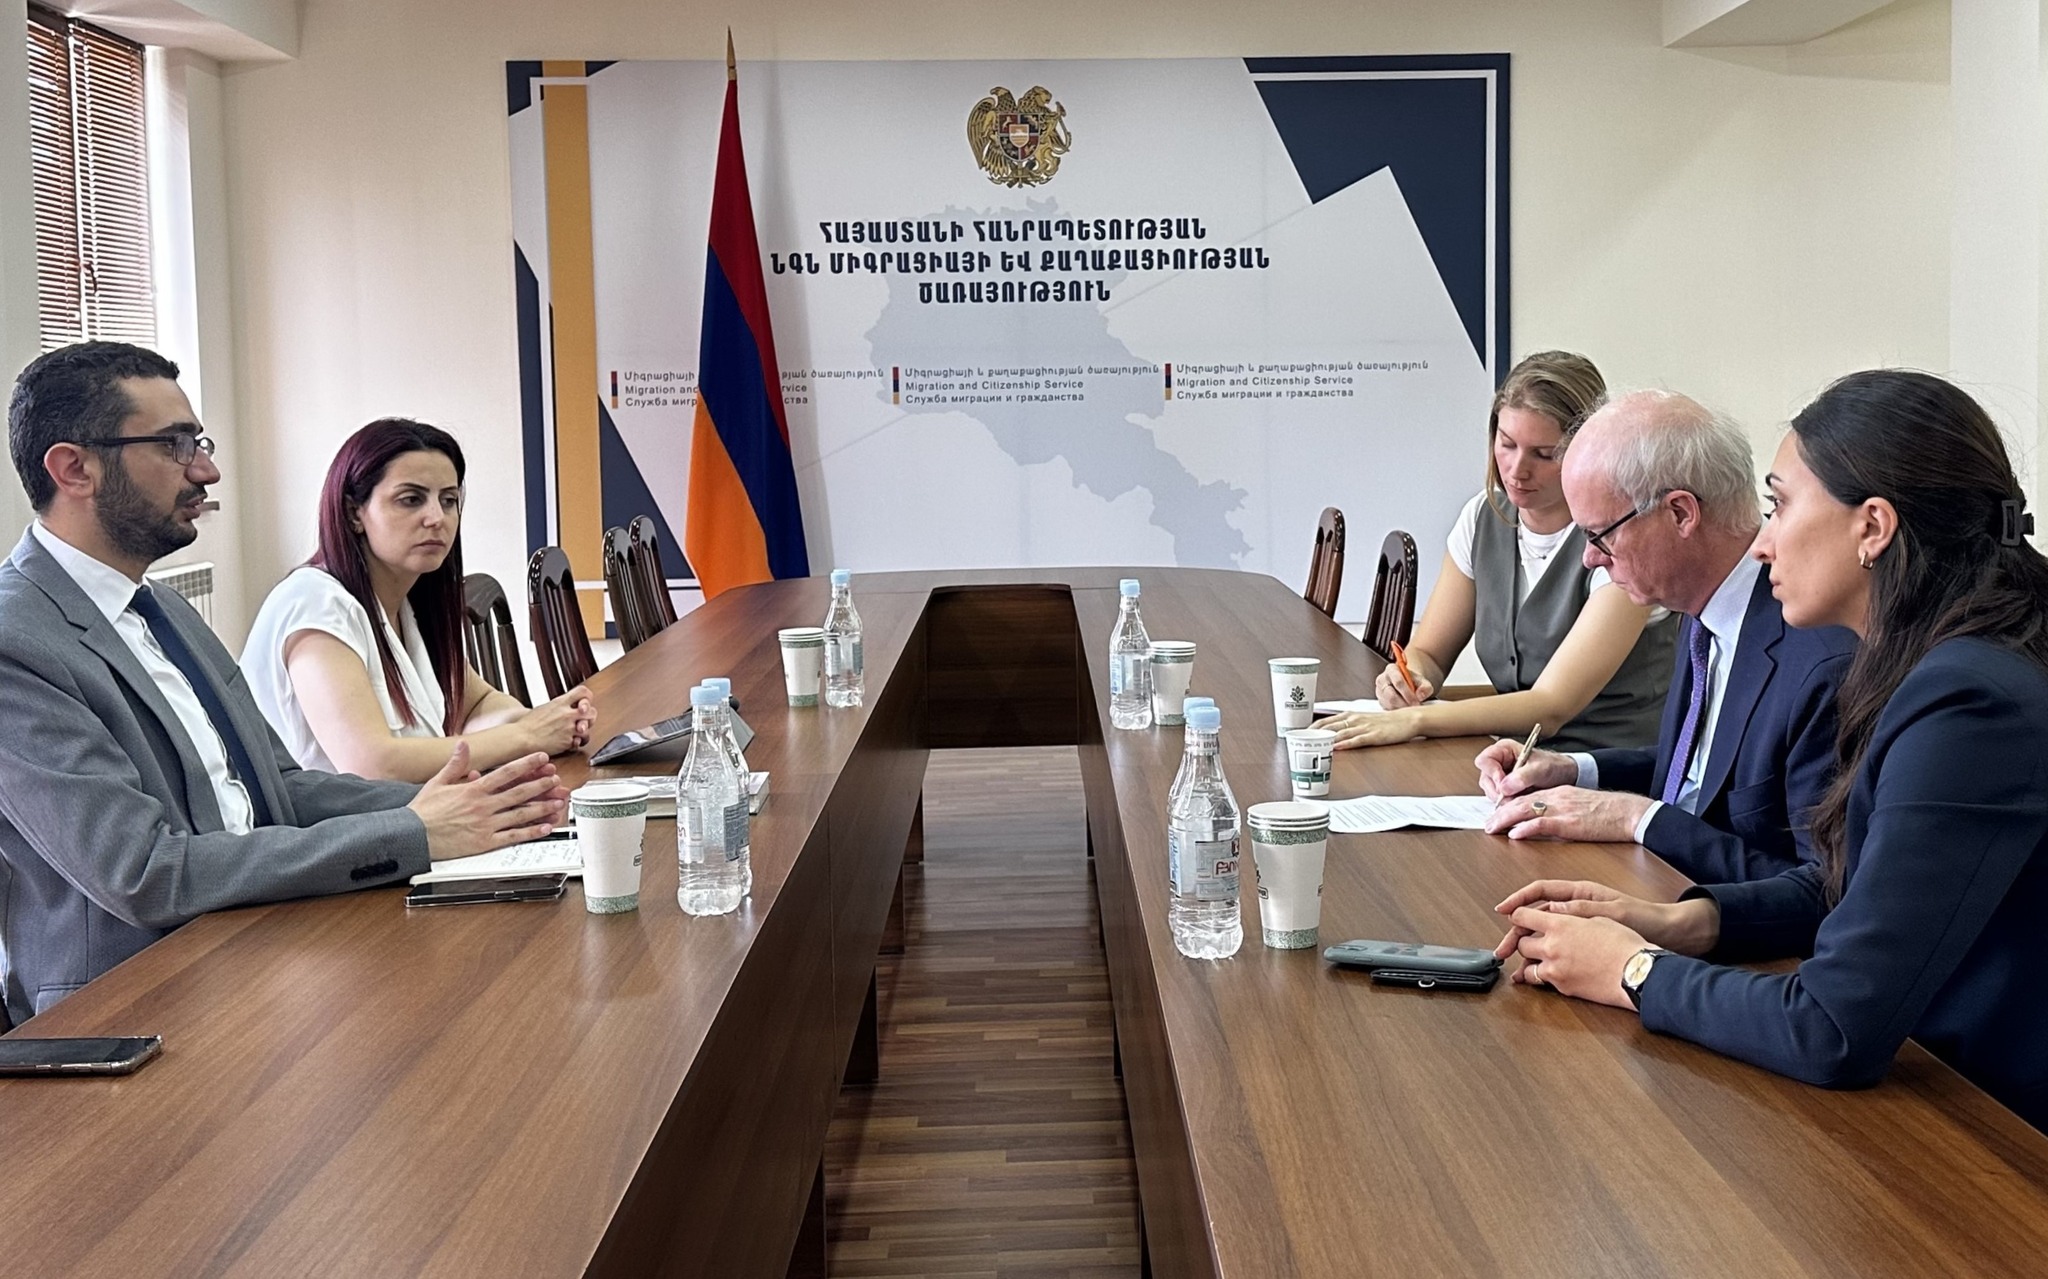 Երևանը քննարկում է կամավոր վերադարձի ինստիտուտի զարգացման հնարավորությունները